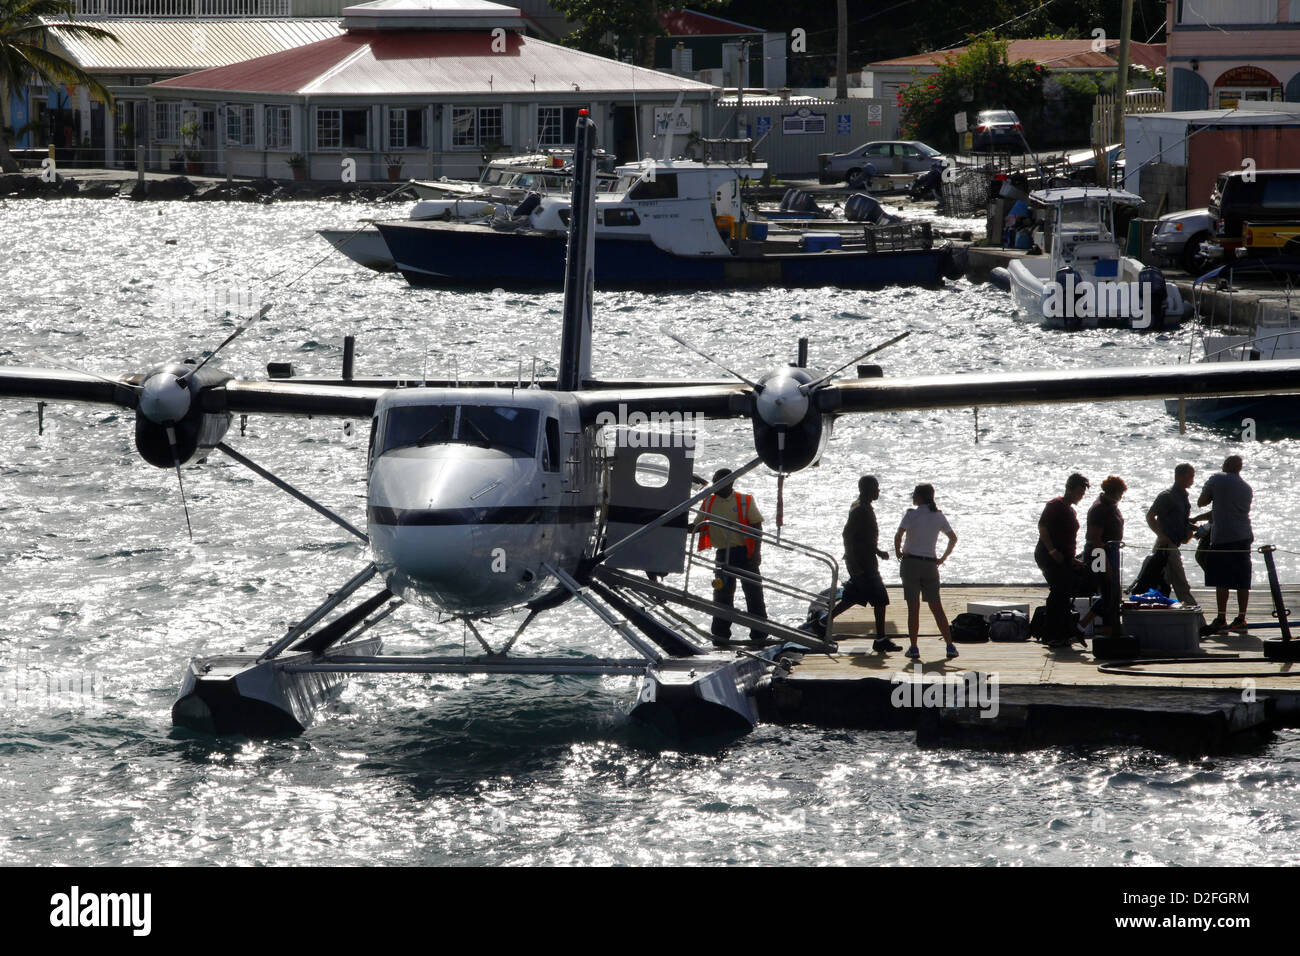 Passagiere aussteigen Seaborne Airlines Wasserflugzeug, Charlotte Amalie, St. Thomas, Amerikanische Jungferninseln, Karibik Stockfoto